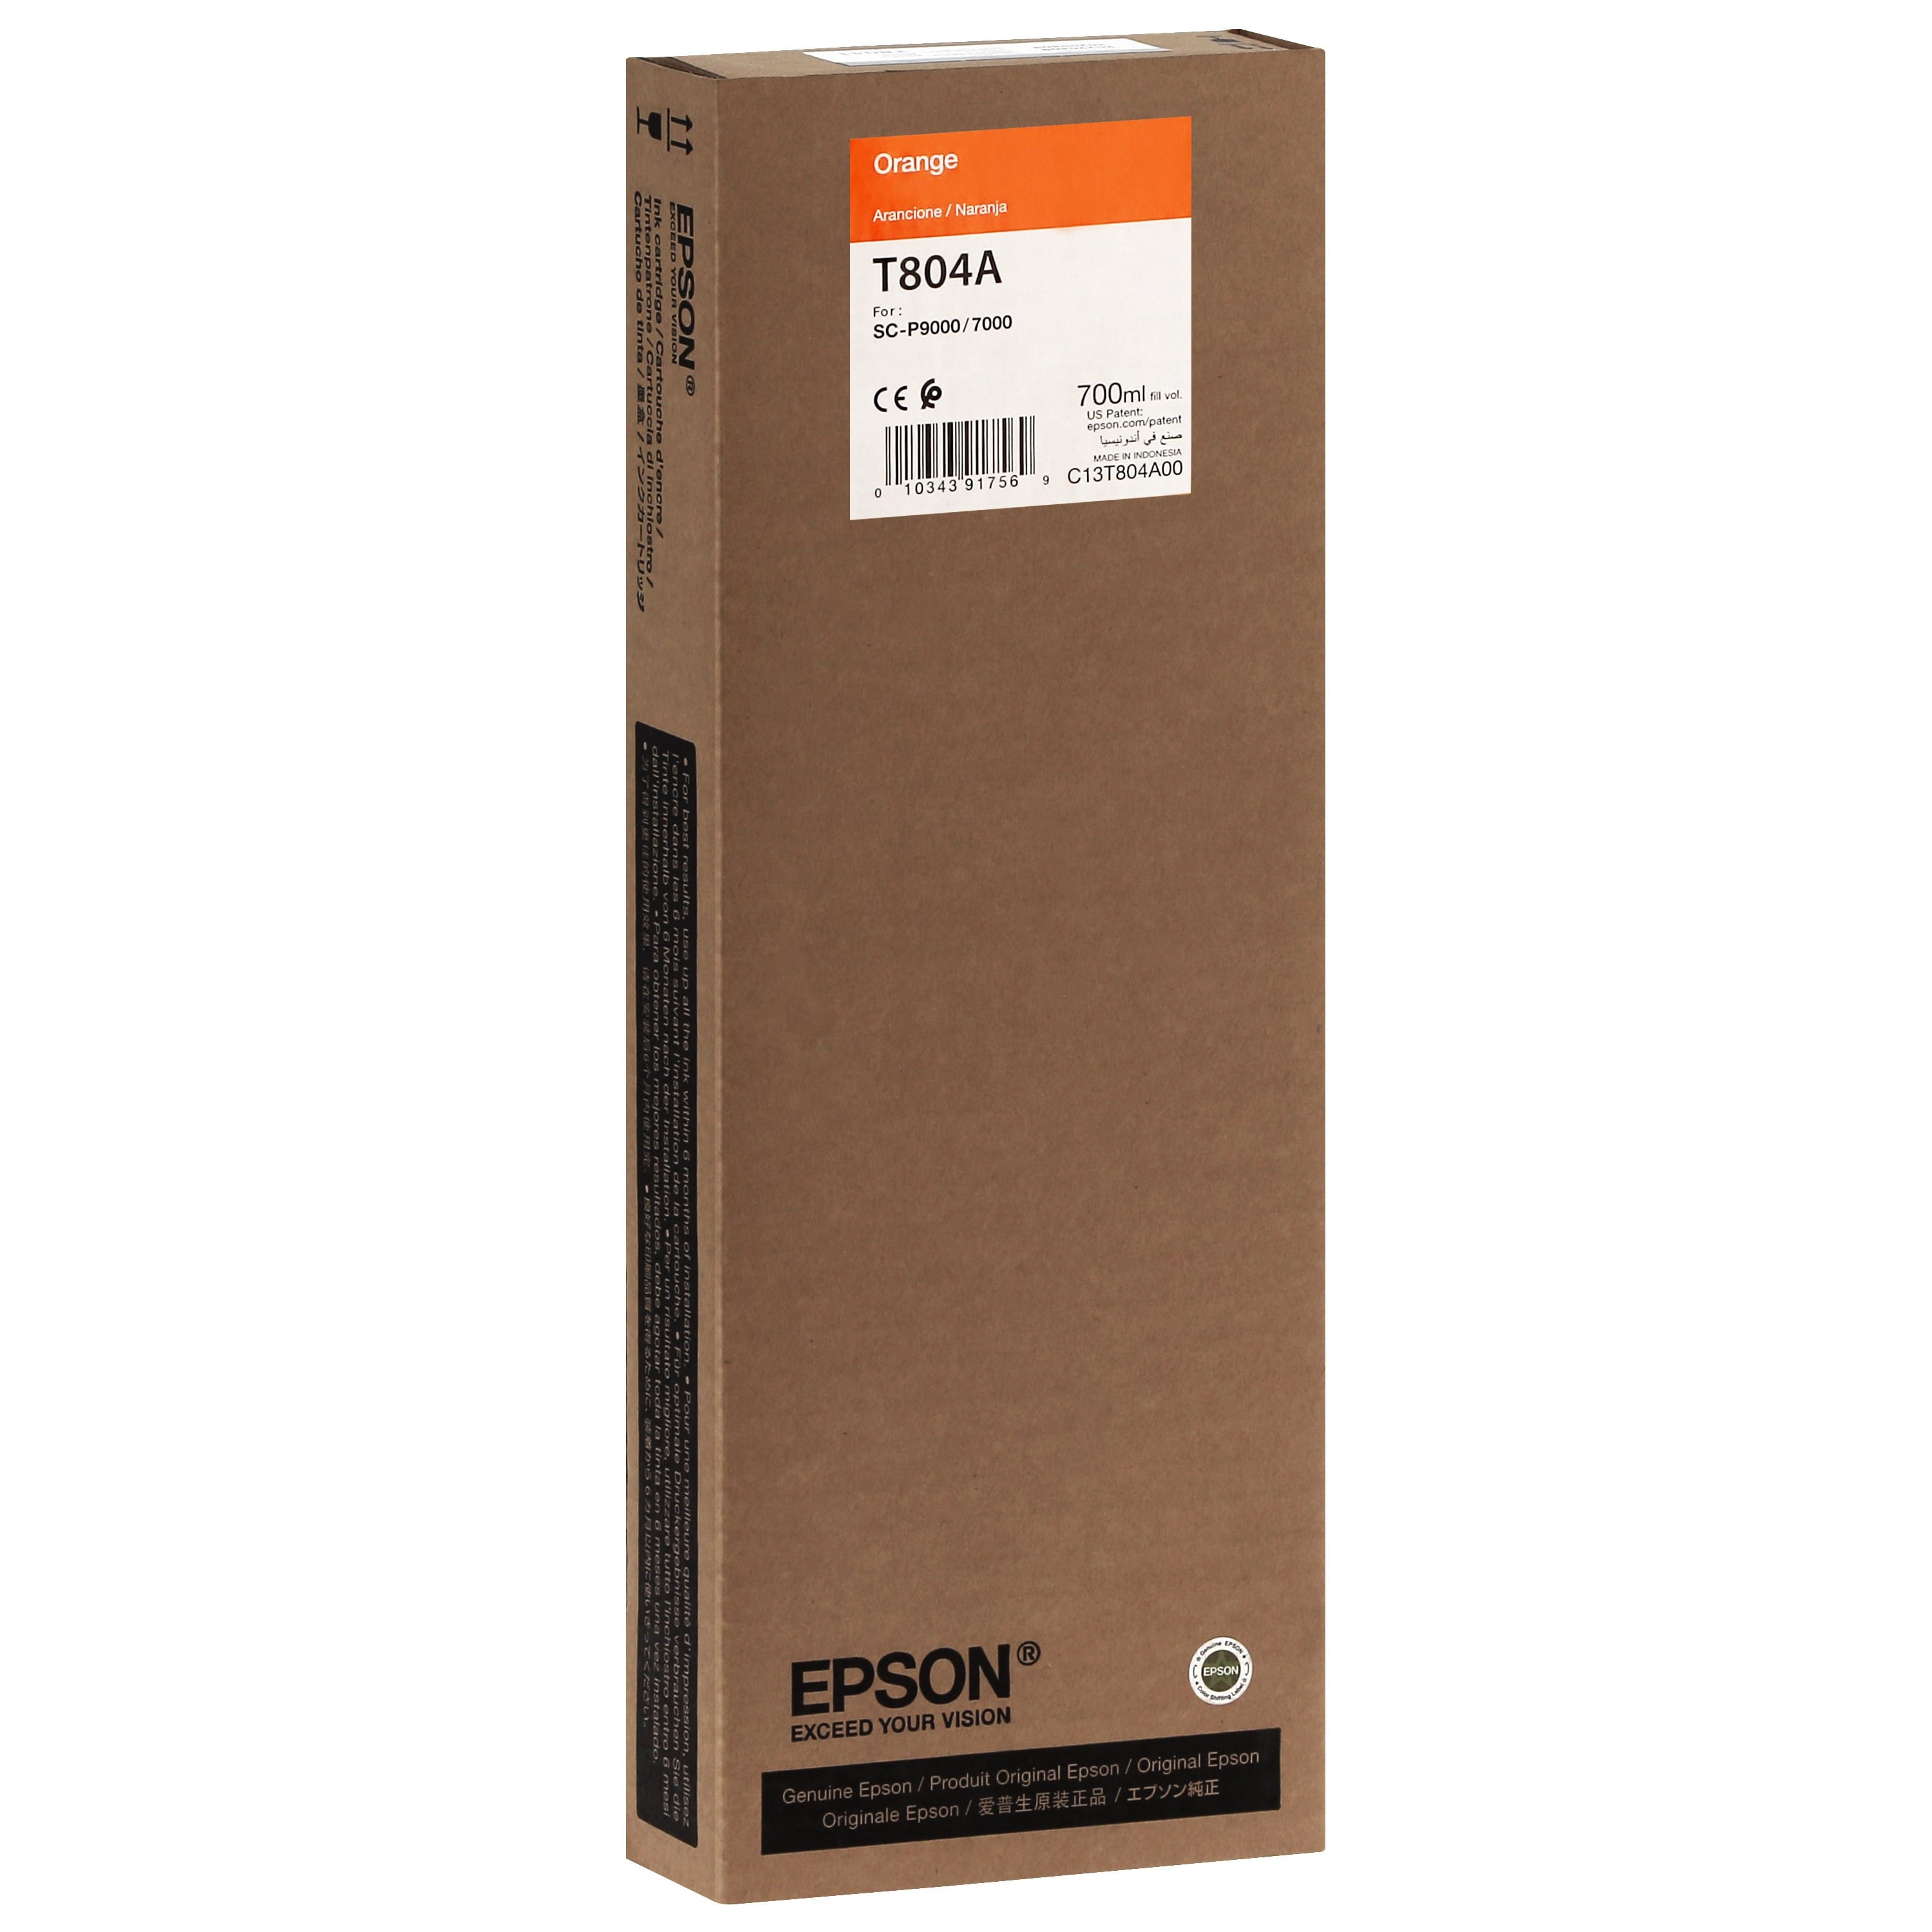 EPSON - Cartouche d'encre traceur T804A Pour imprimante SC-P7000/7000V/9000/9000V Orange - 700ml